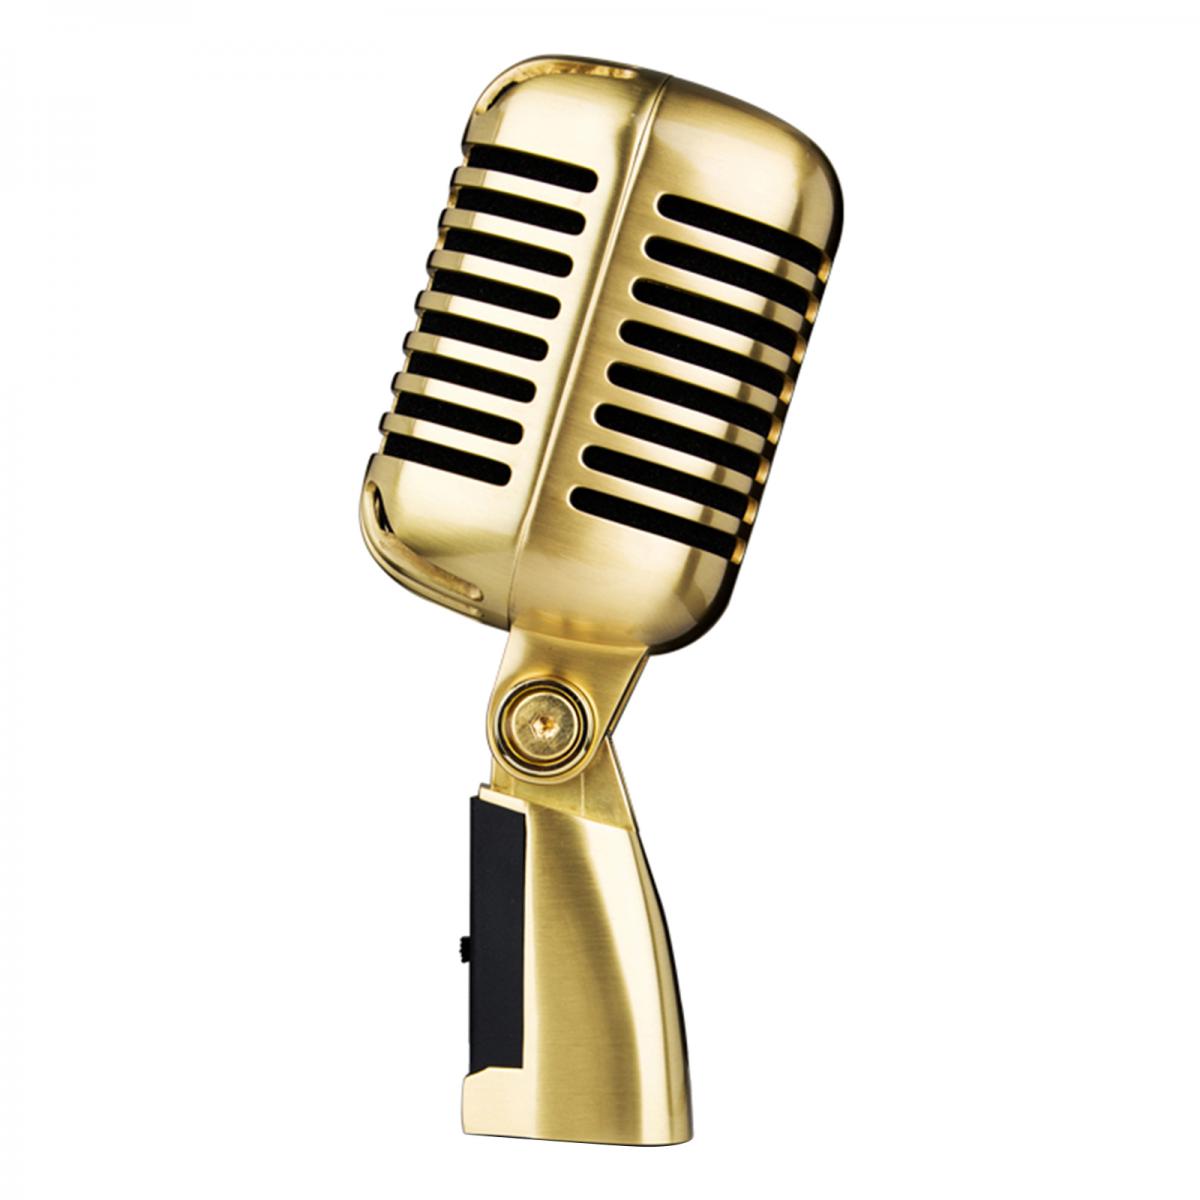 Micros studio marque generique Microphone Vocal Dynamique Vintage Classique Pour Karaoké Sur Scène En Direct Argent